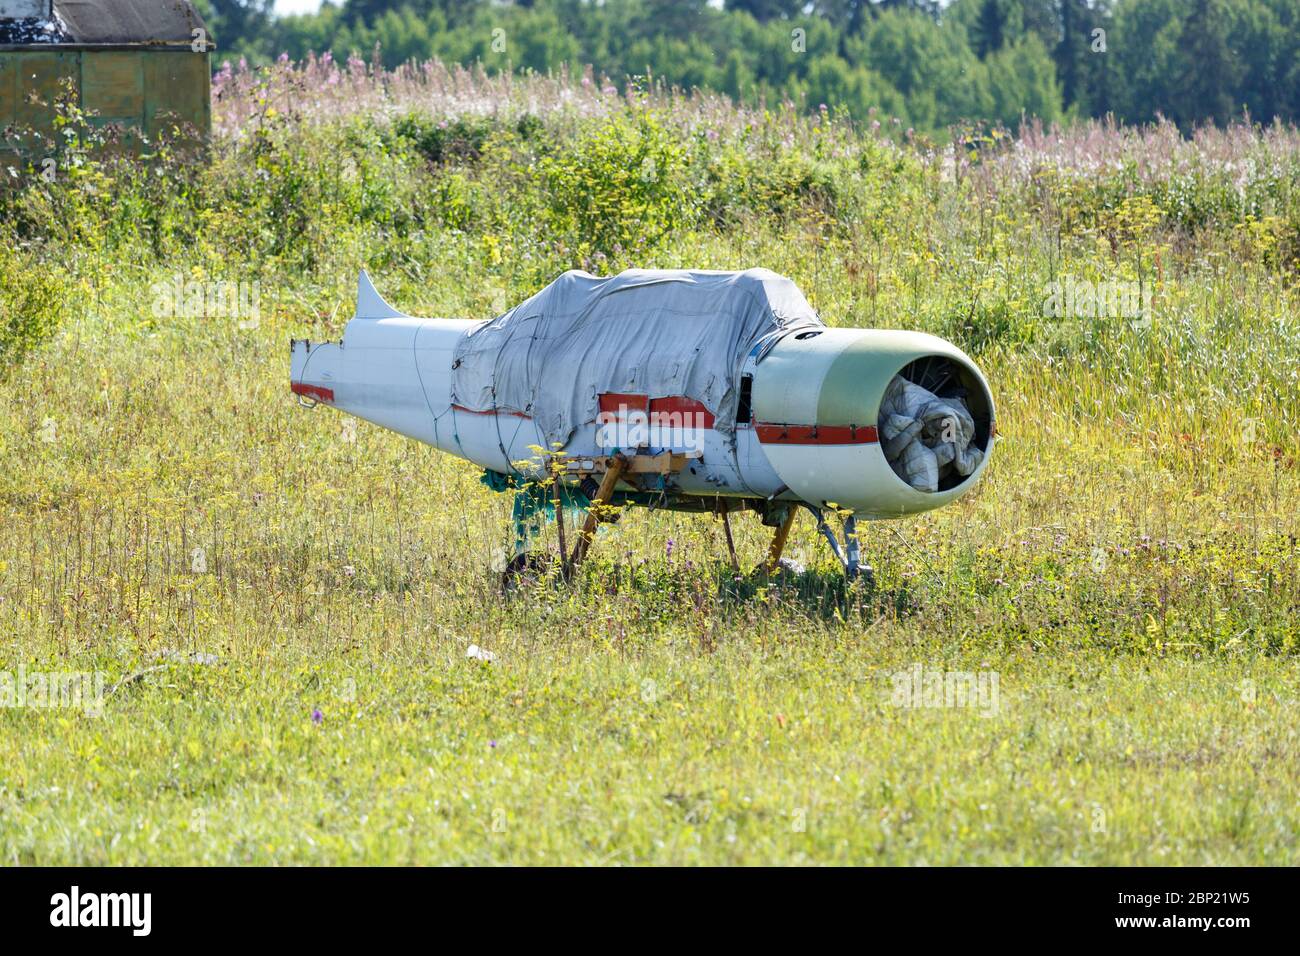 Un viejo avión sin alas, cubierto con un tarp, se encuentra en un prado en un día soleado de verano Foto de stock